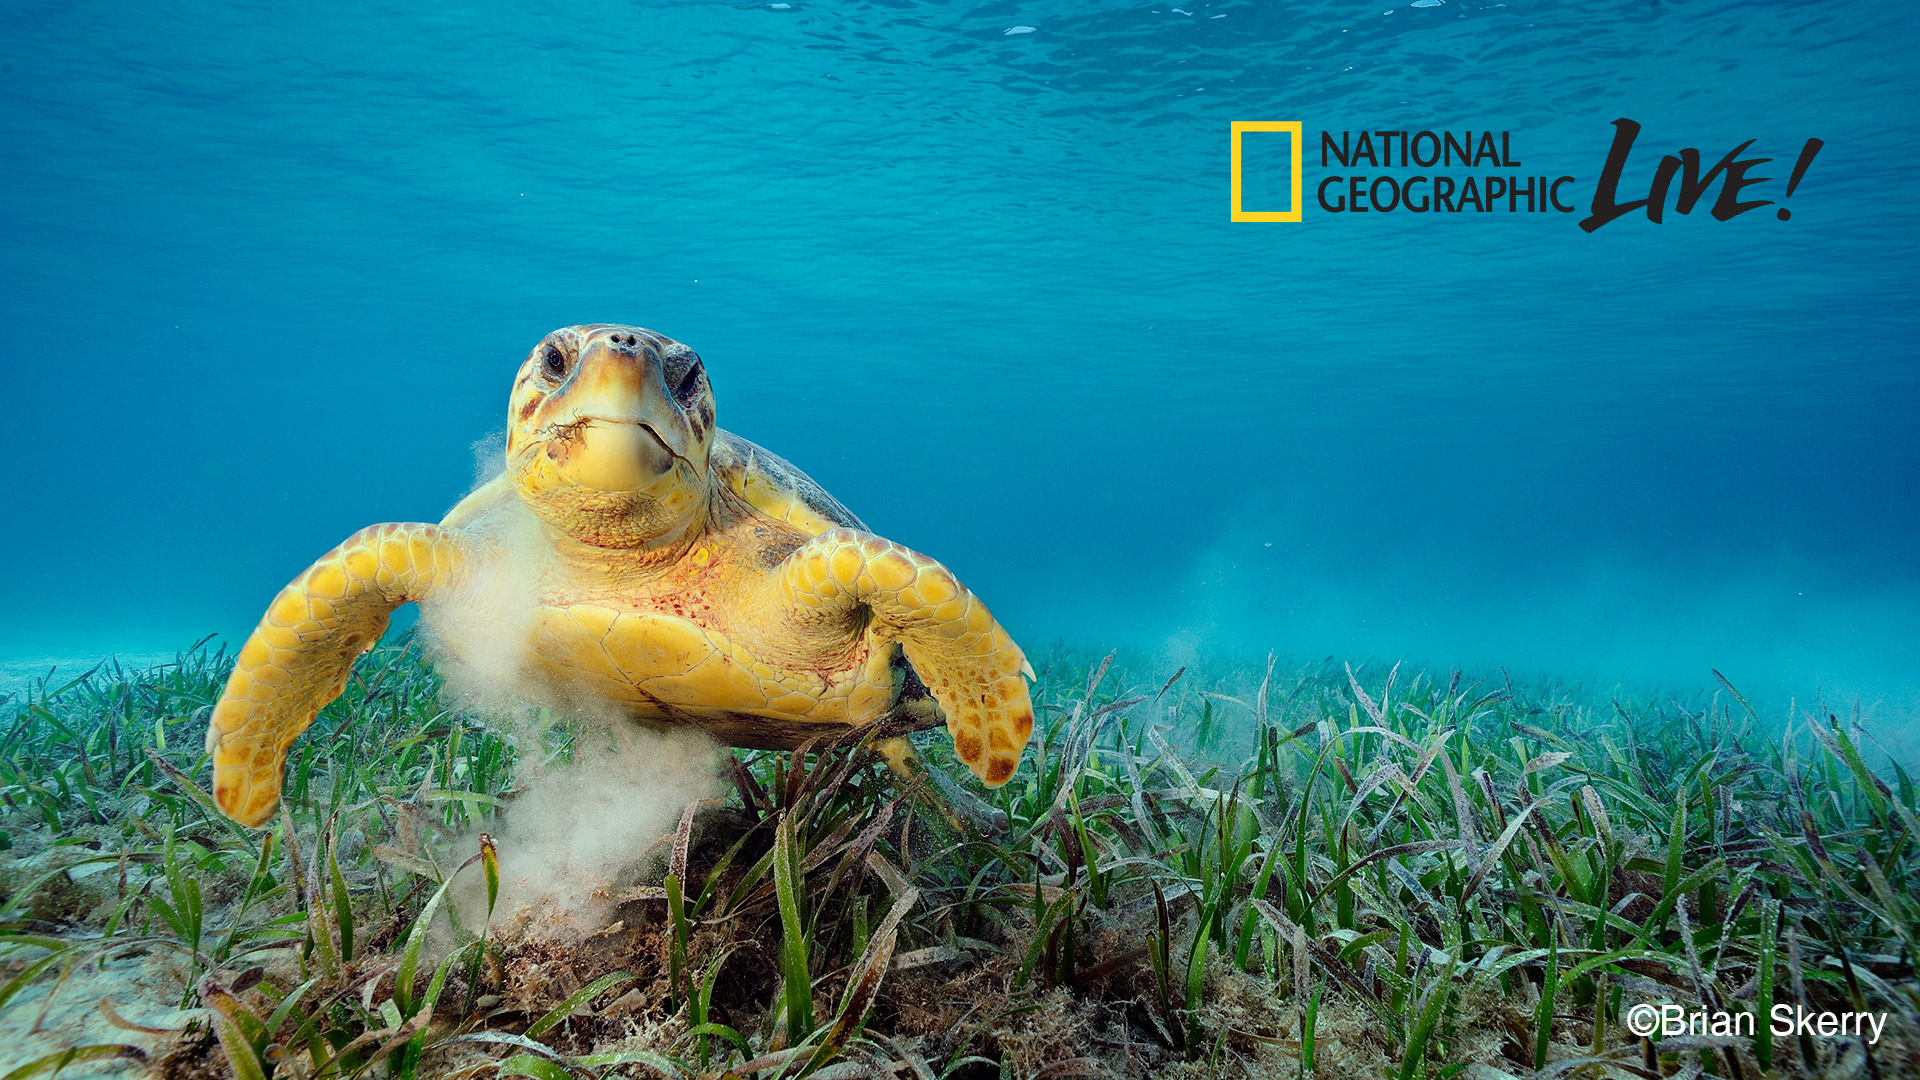 Chương trình National Geographic Live! nổi tiếng (cre: National Geographic)